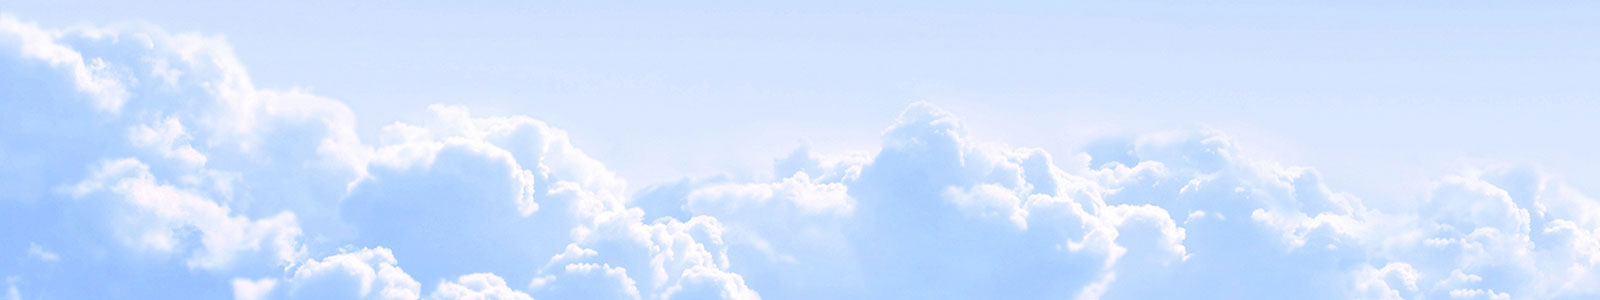 №1317 - Голубое облачное небо